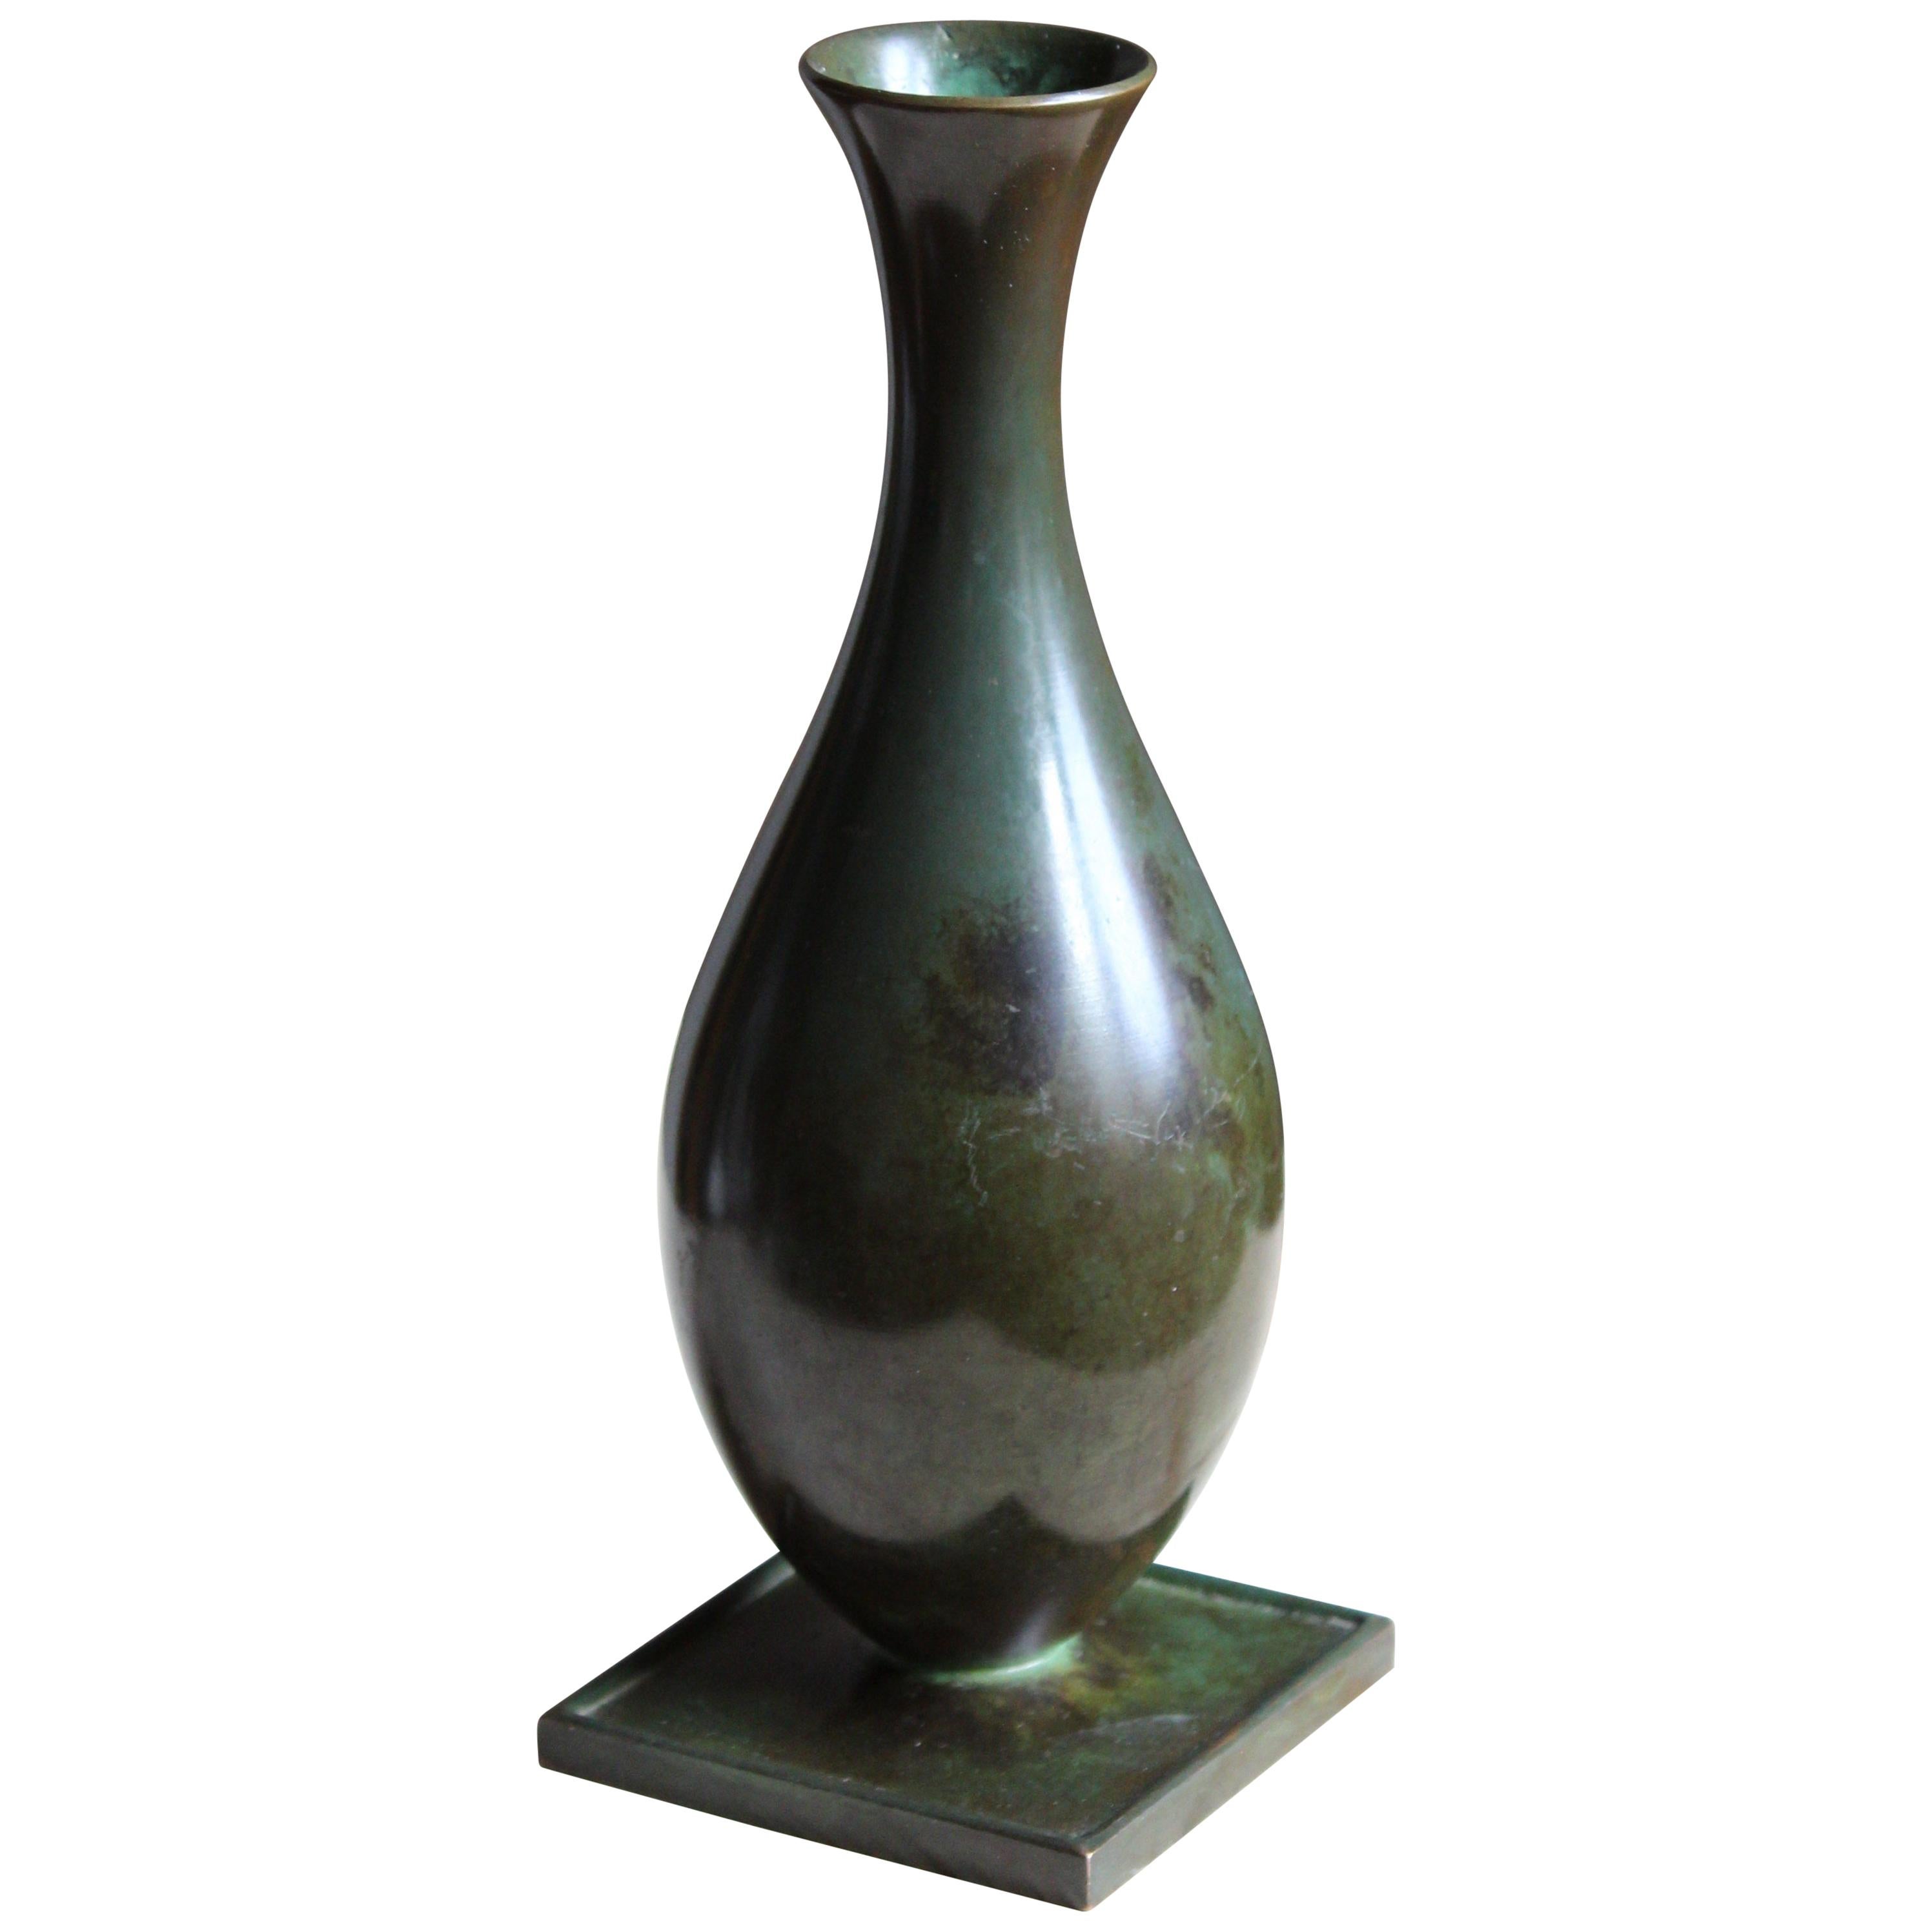 GAB Guldsmedsaktiebolaget, Small Vase or Vessel, Bronze, Sweden, 1930s